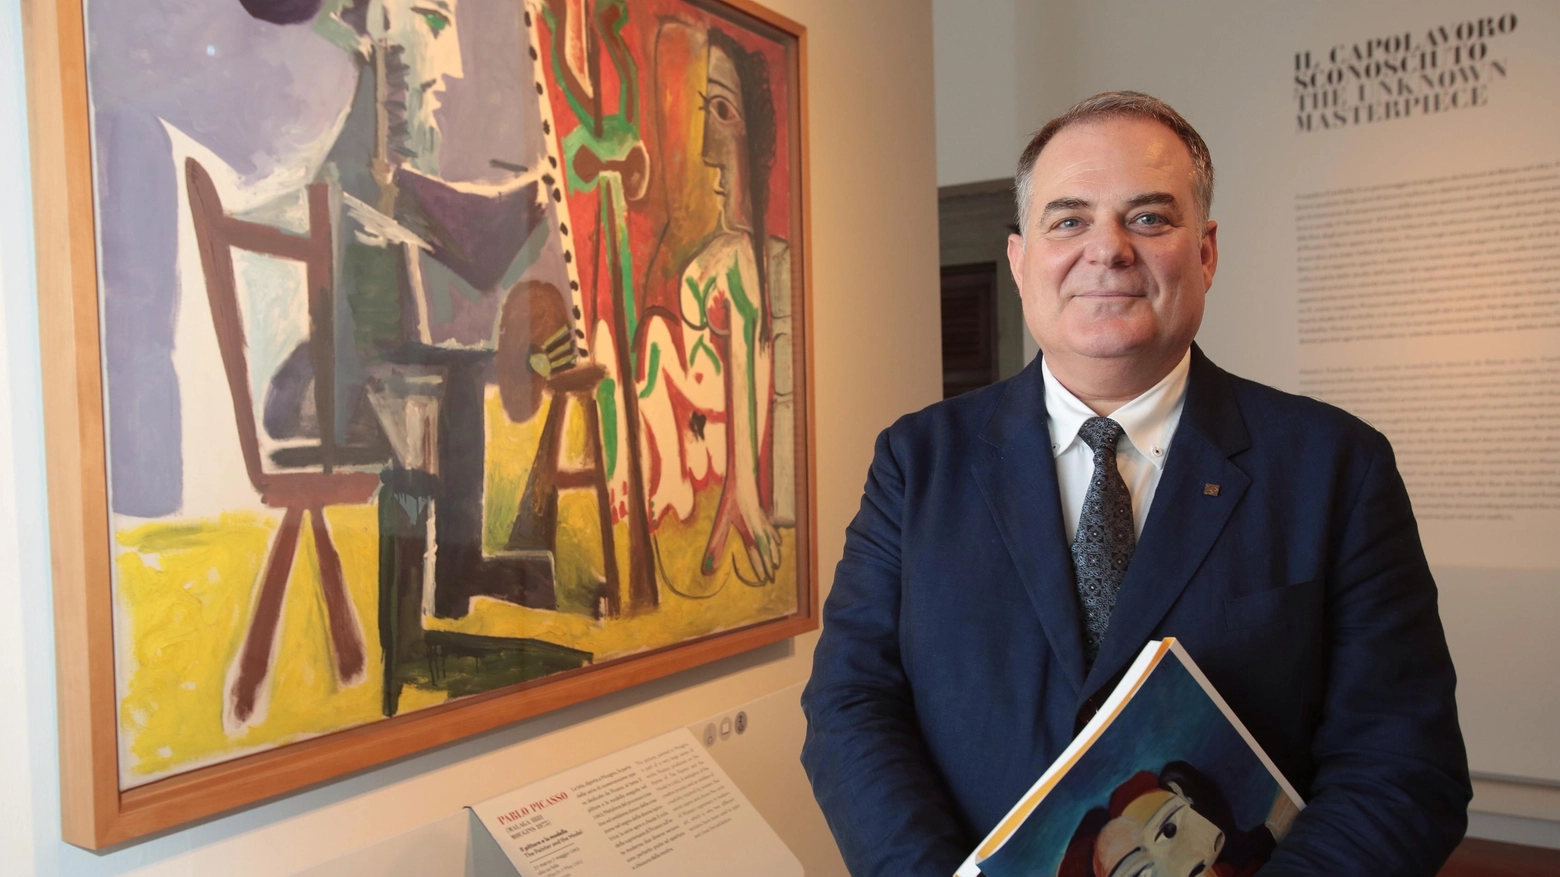 Eugenio Carmona il curatore della mostra "Picasso e la modernità spagnola" (New Press Photo)